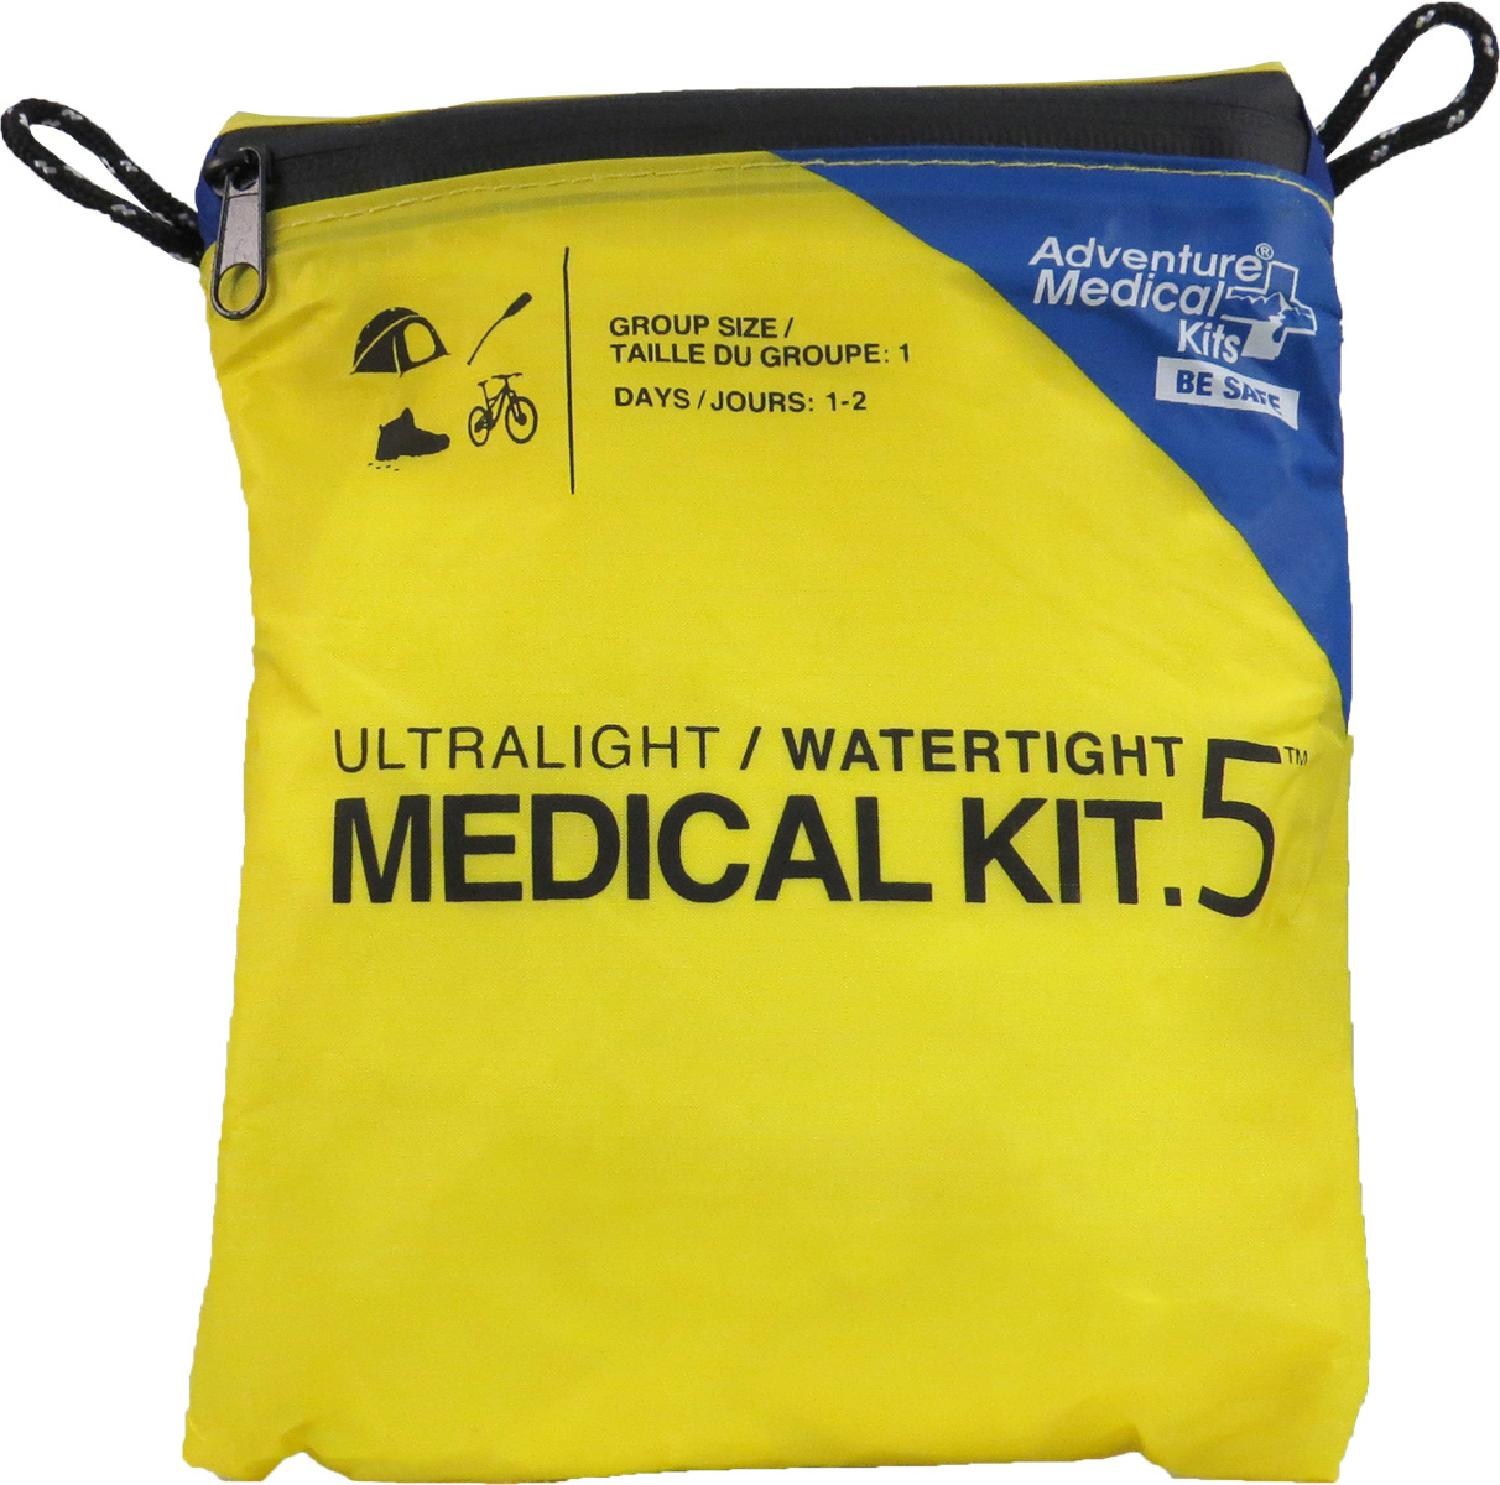 Сверхлегкая/водонепроницаемая медицинская аптечка калибра .5 Adventure Medical Kits